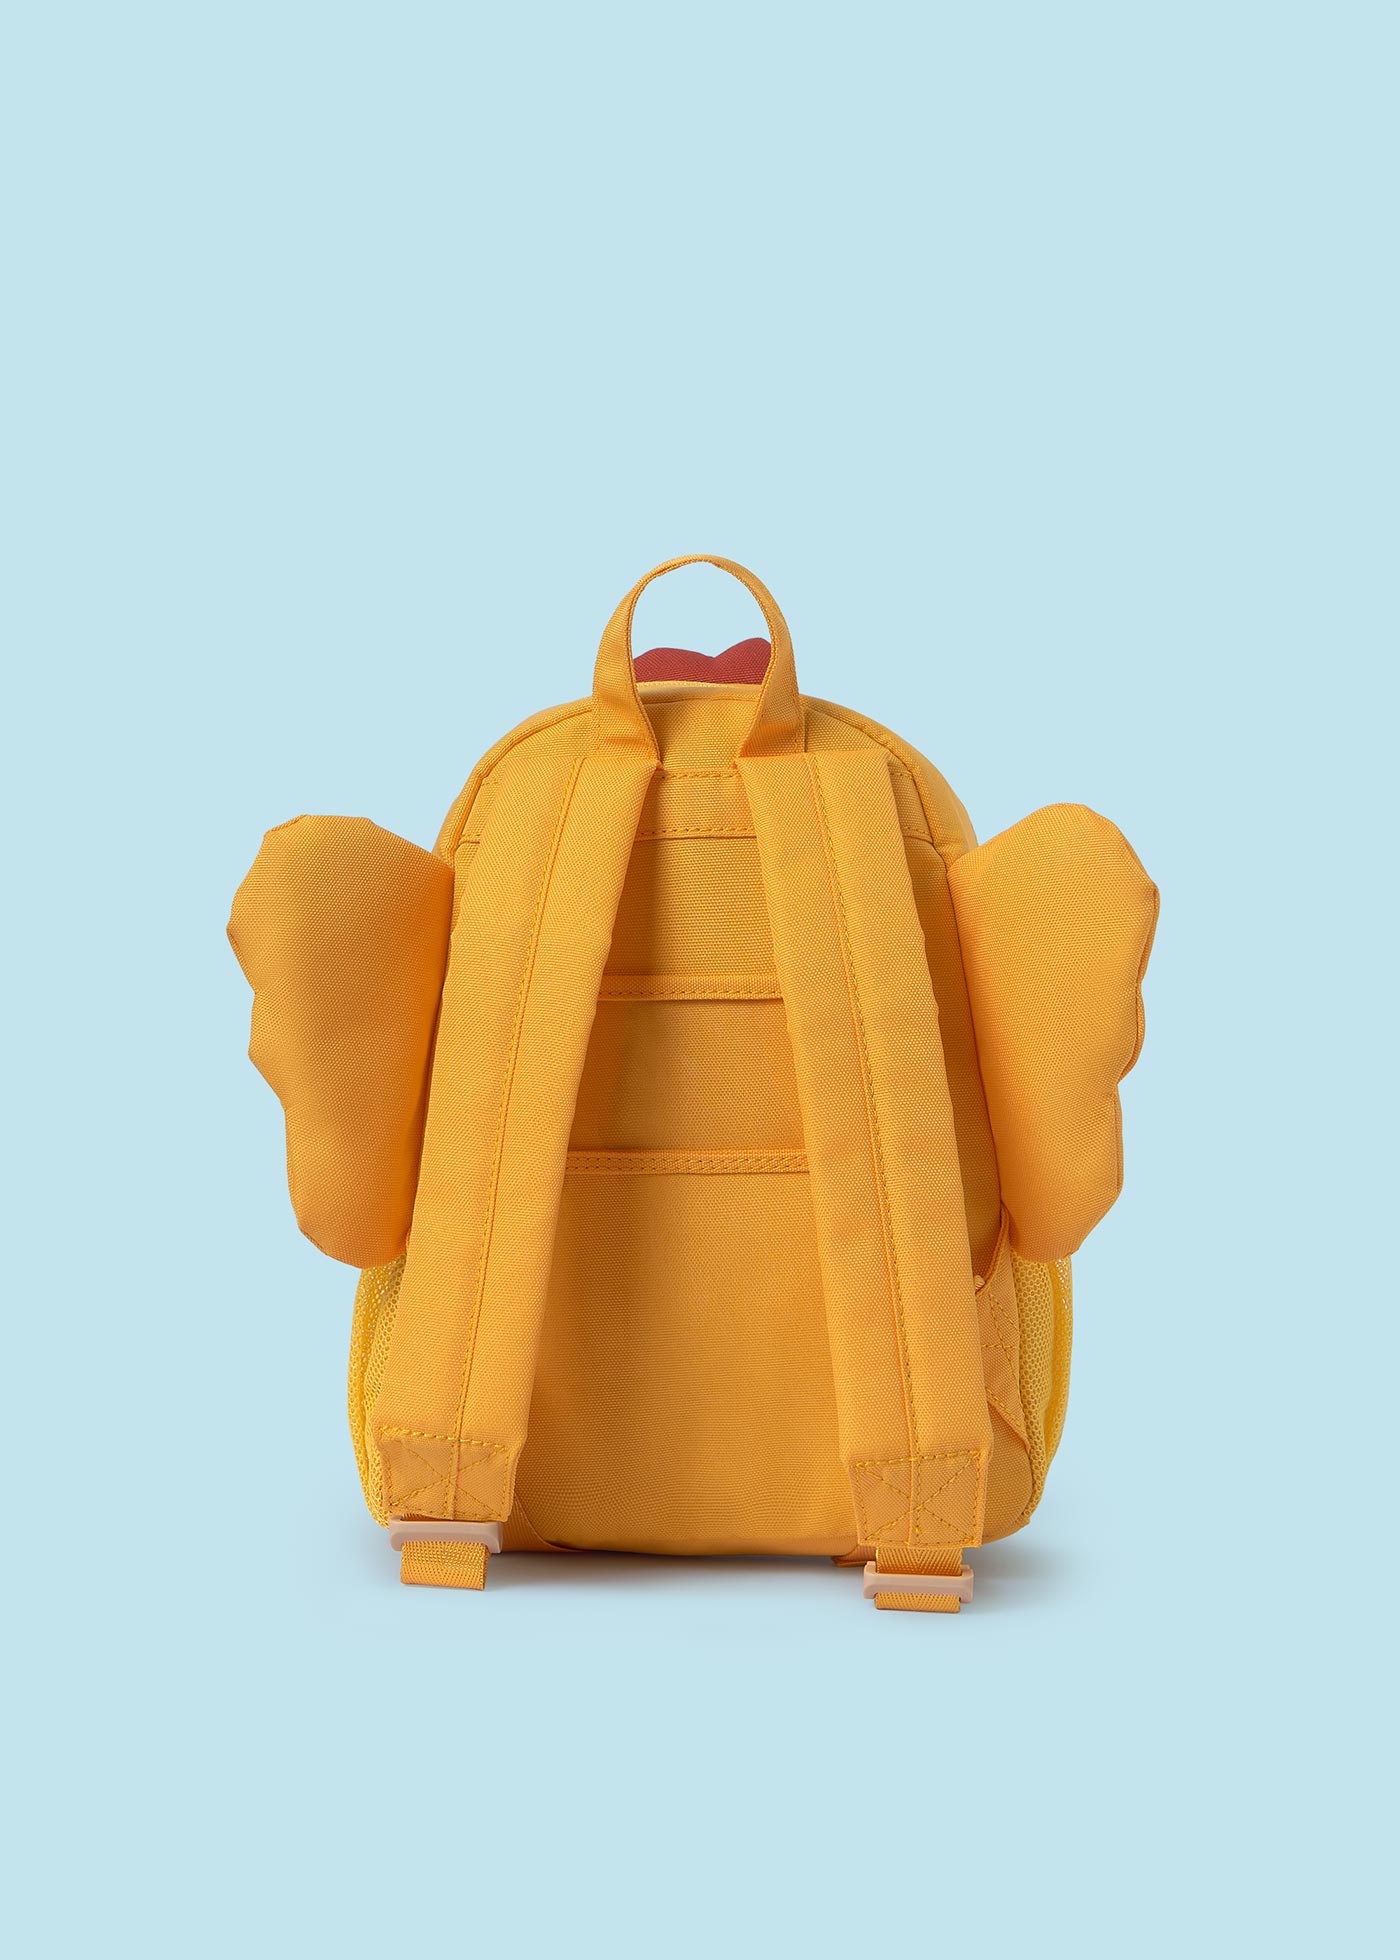 Baby Nursery Backpack